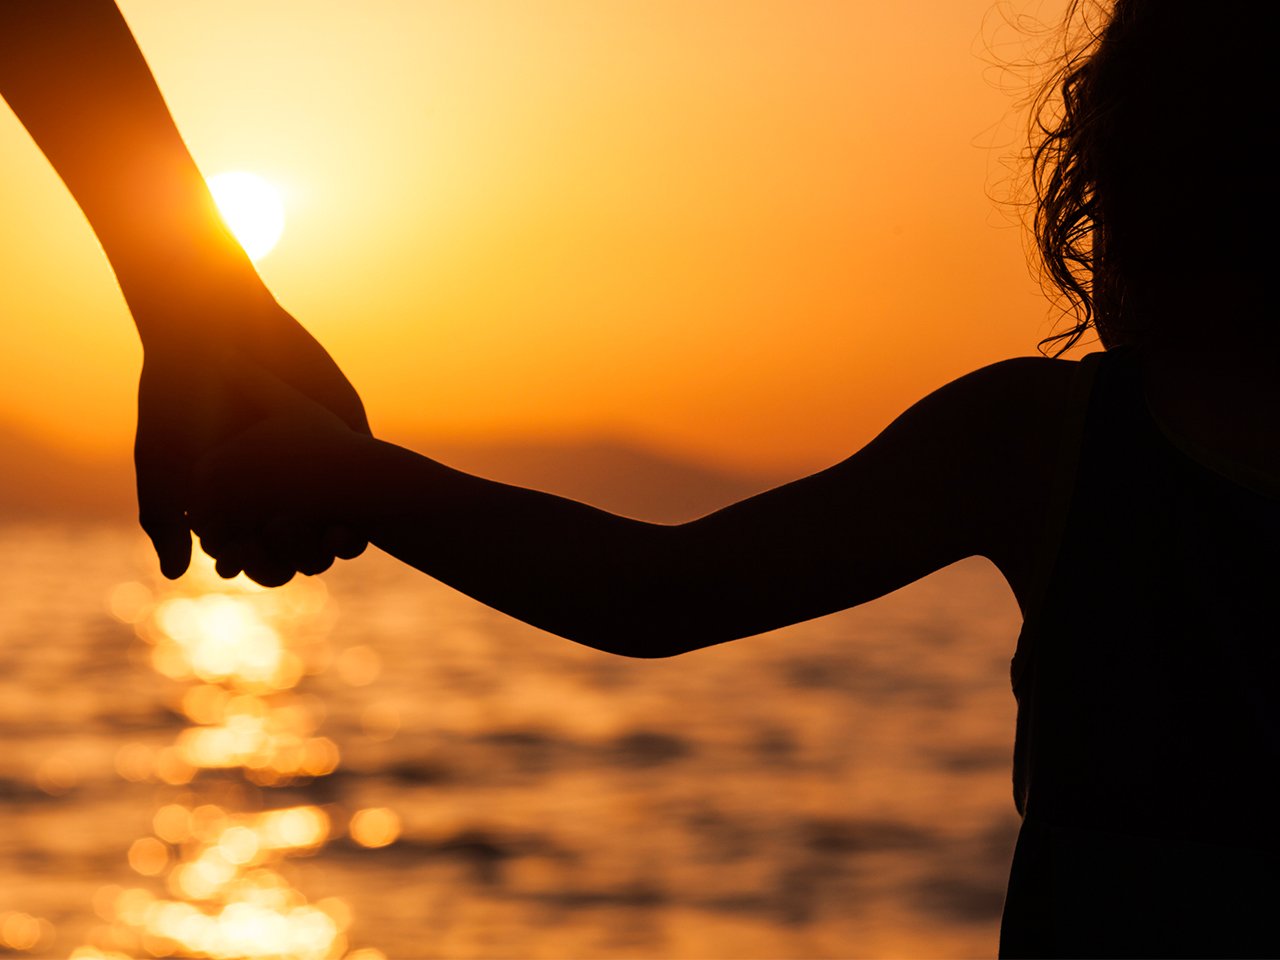  kobieta i maluch trzymający się za ręce o zachodzie słońca